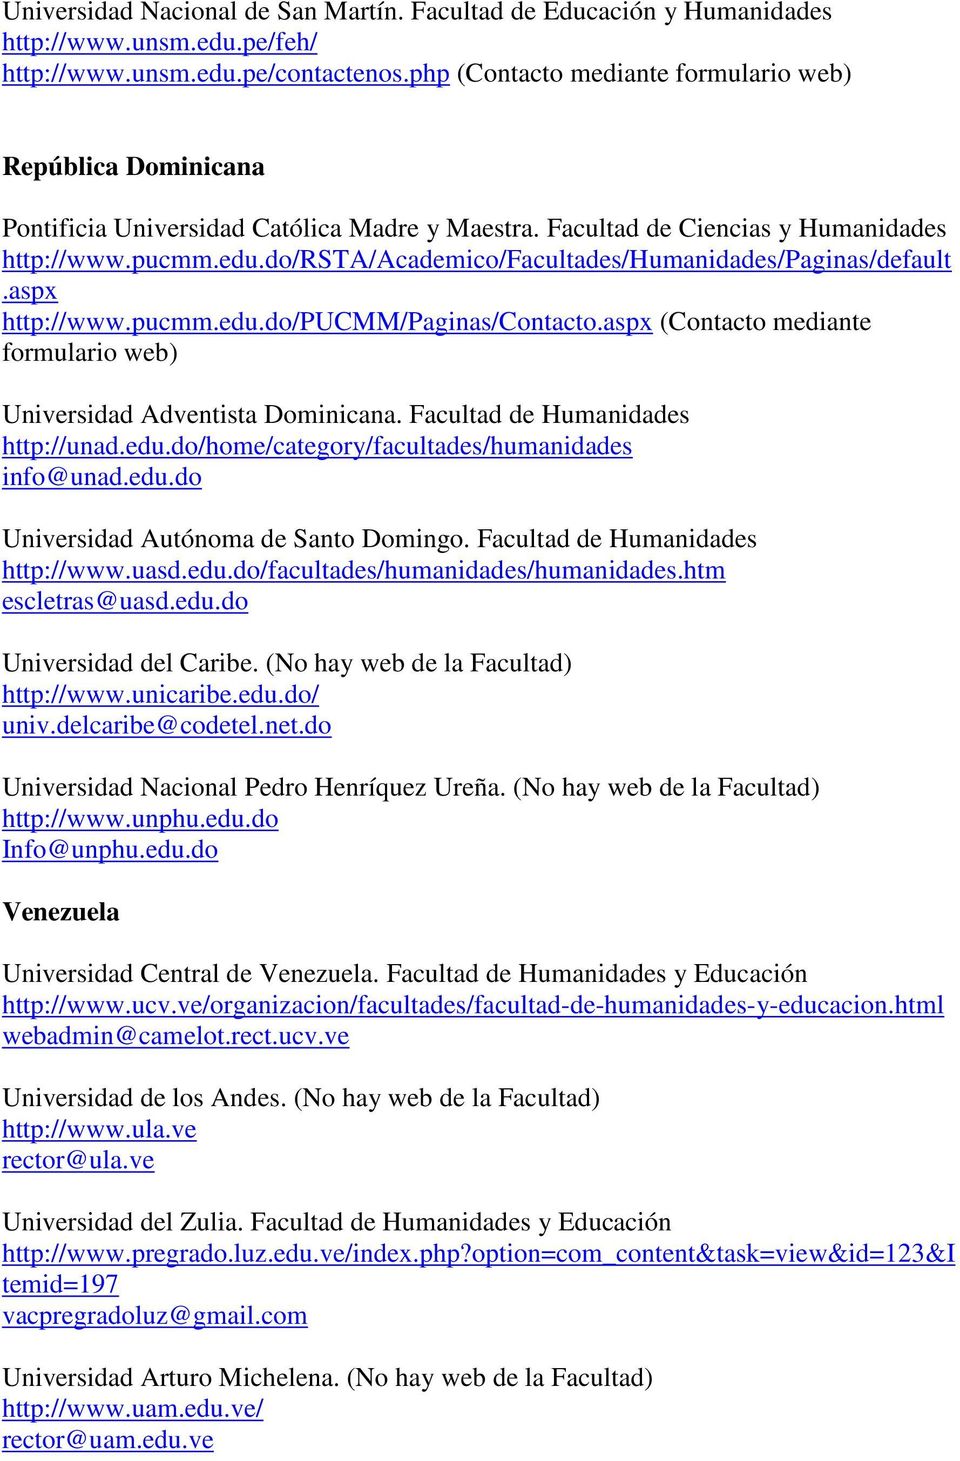 do/rsta/academico/facultades/humanidades/paginas/default.aspx http://www.pucmm.edu.do/pucmm/paginas/contacto.aspx (Contacto mediante formulario web) Universidad Adventista Dominicana.